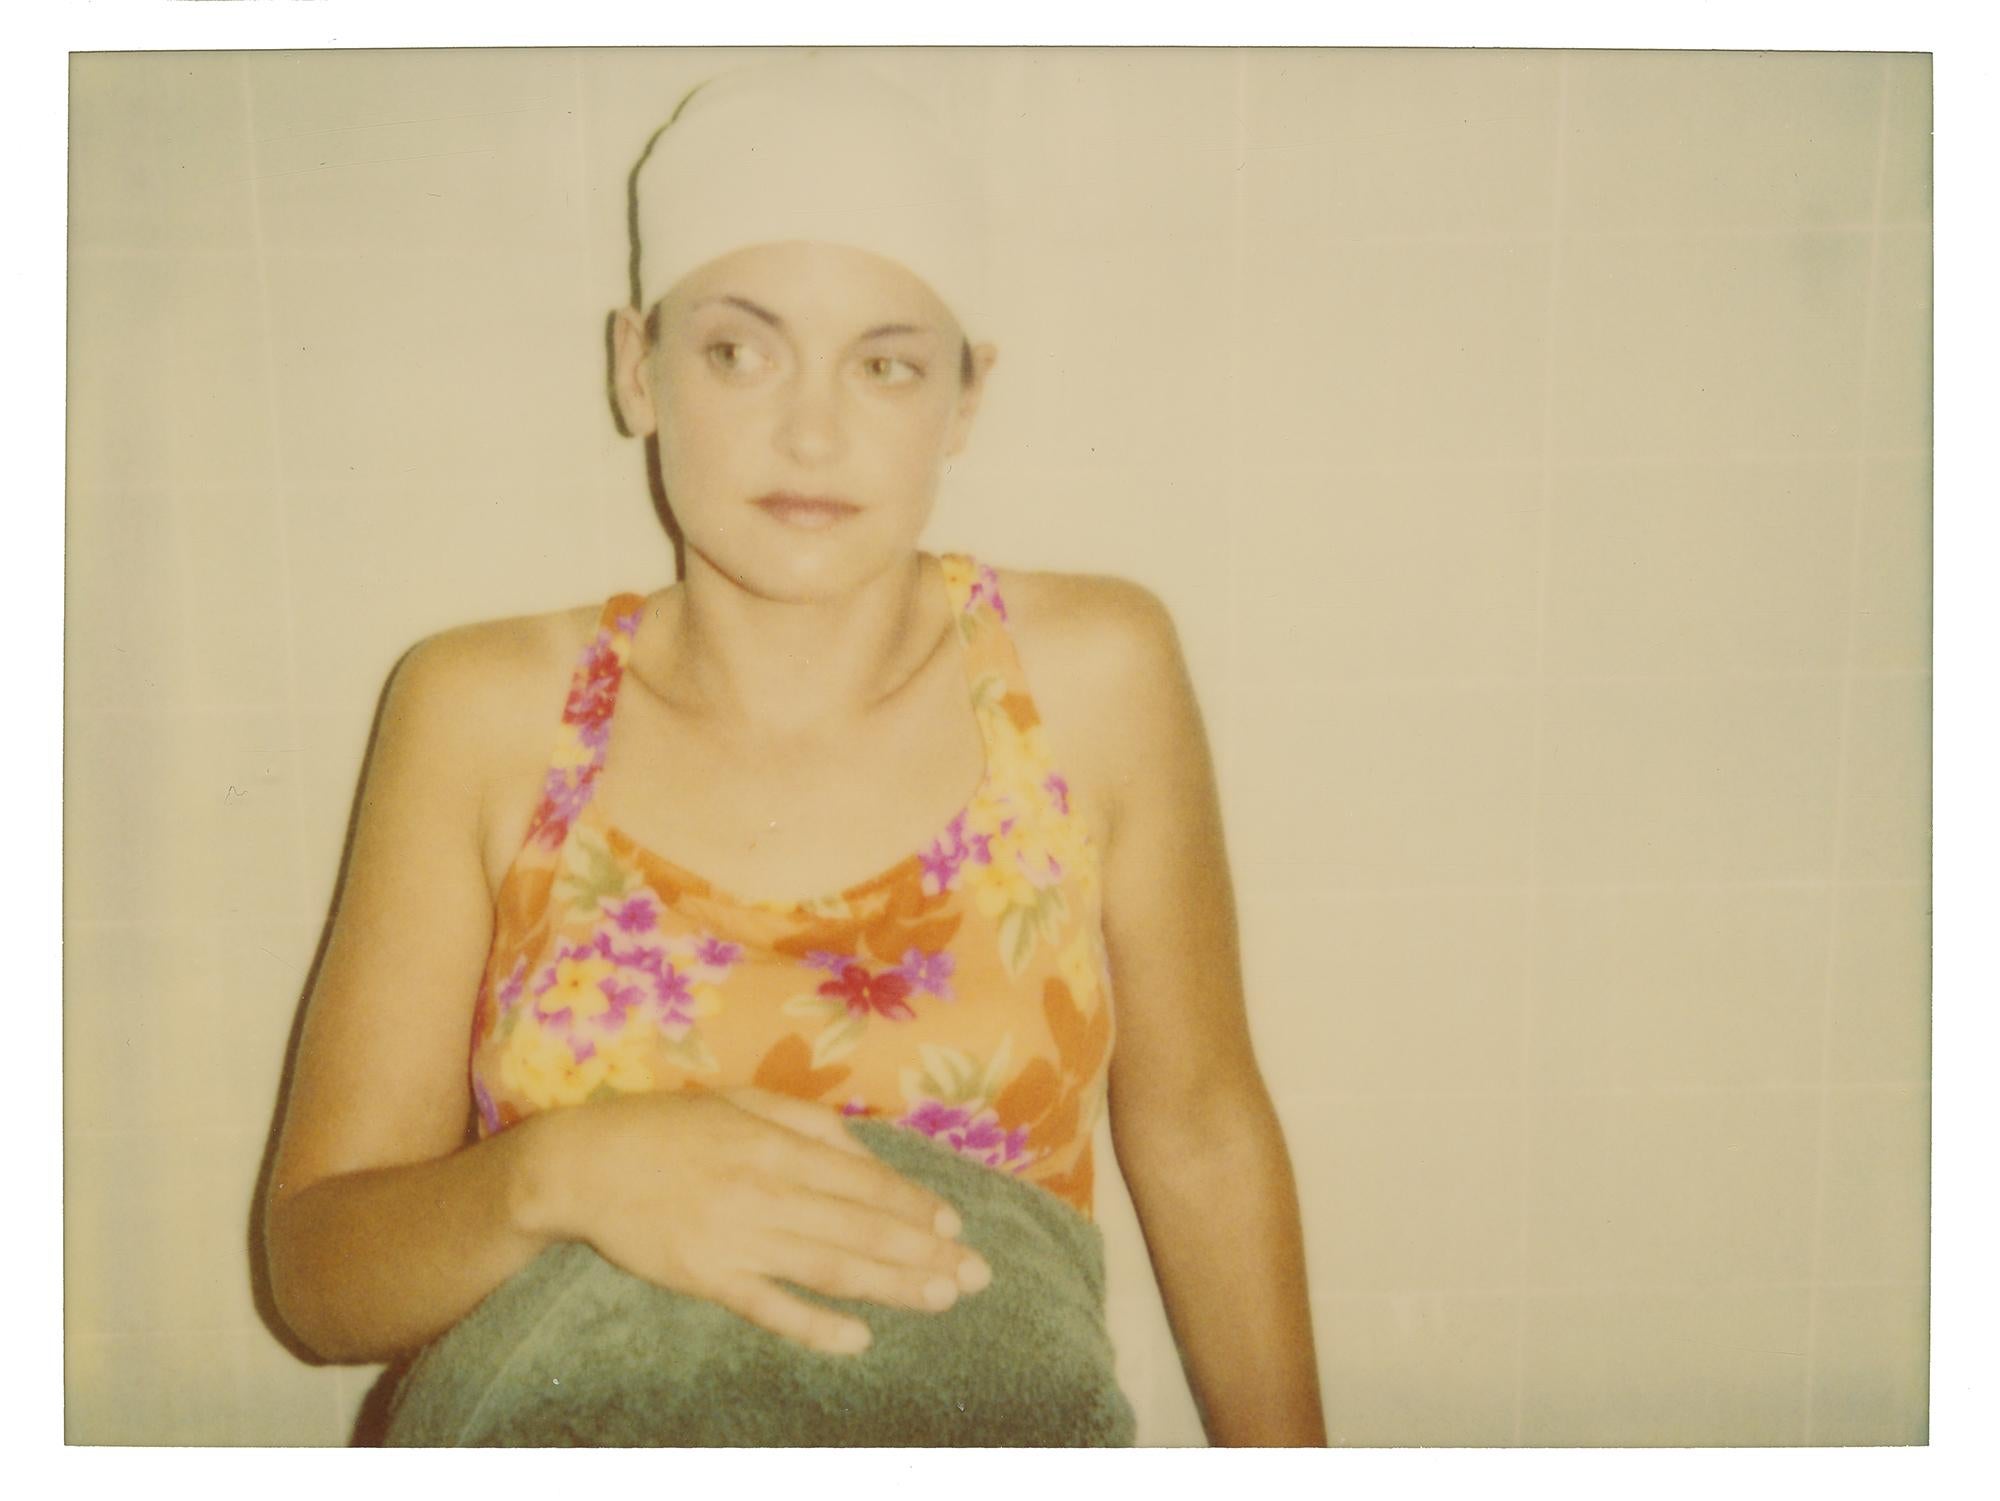 Color Photograph Stefanie Schneider - Jean 3 (Suburbia) - Contemporain, Polaroid, Analogique, Color, Photographie, Portrait